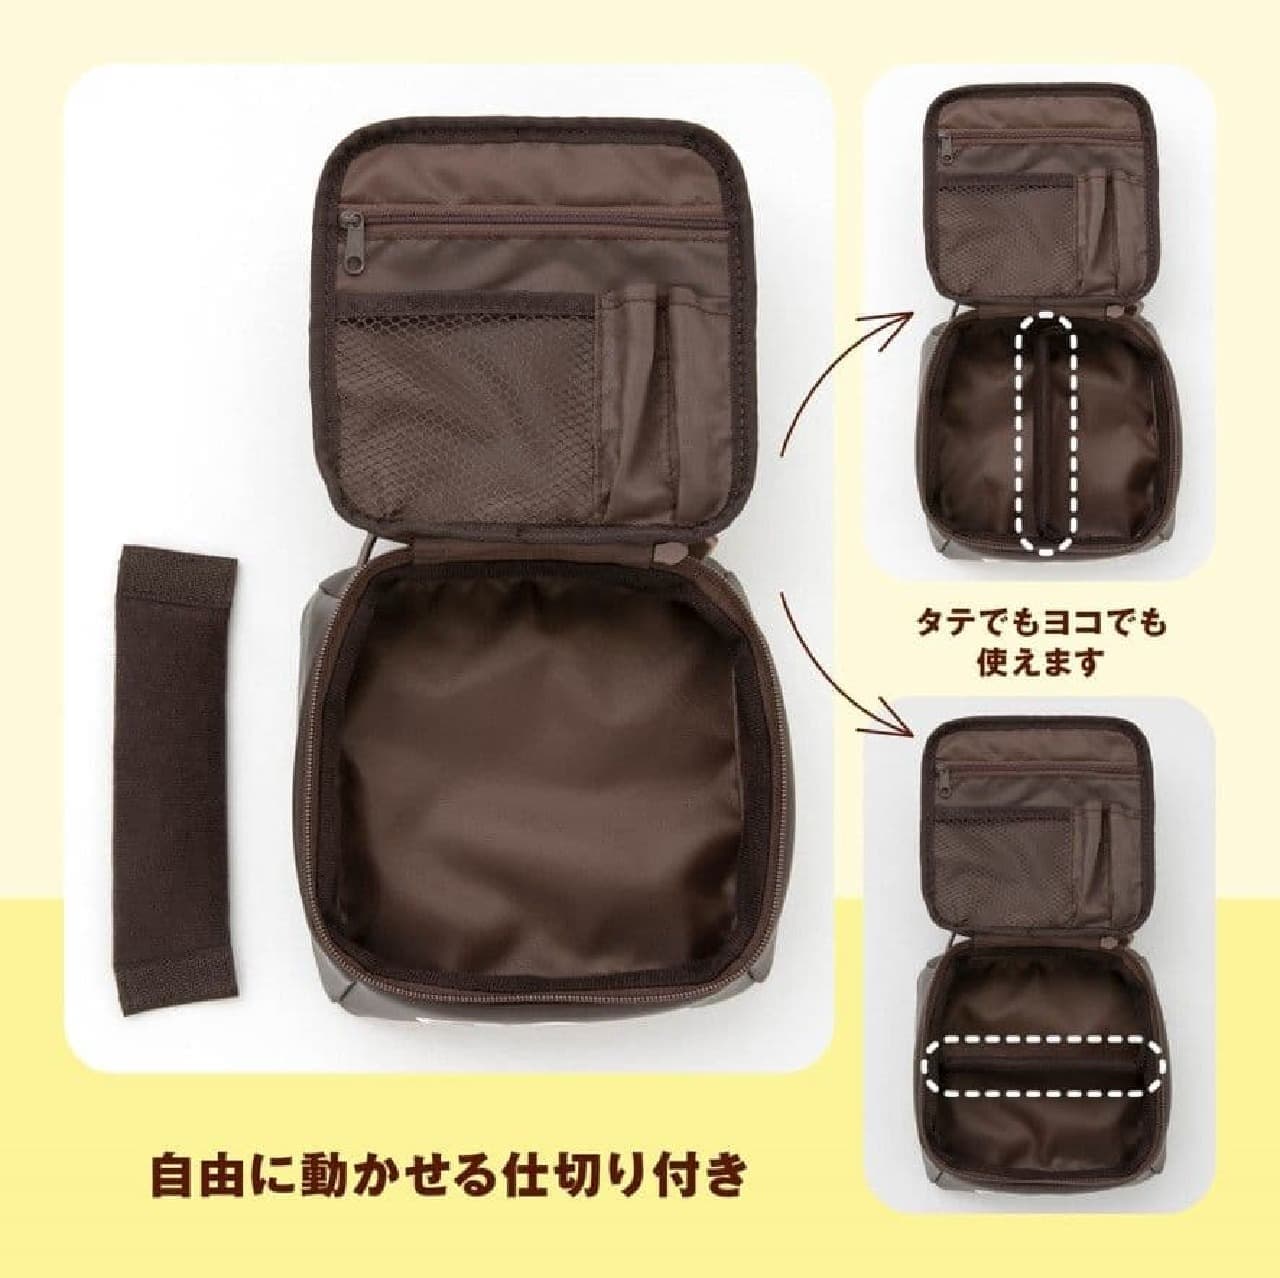 チロルチョコマルチポーチBook コーヒーヌガーver. Special Package